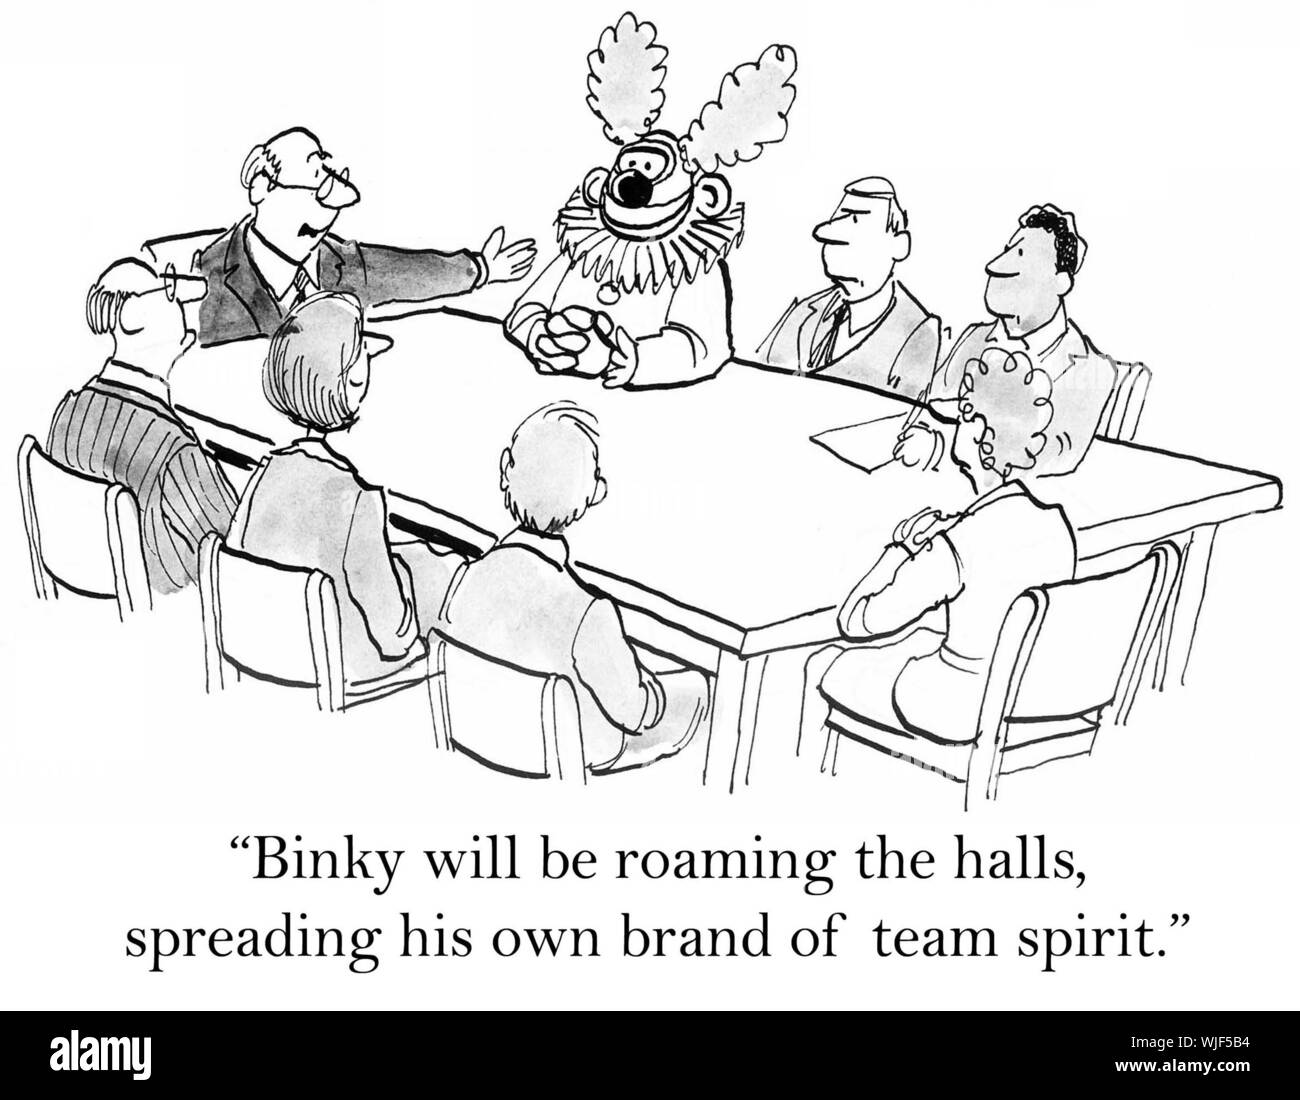 "Binky wird Roaming die Hallen werden, seine eigene Marke der Teamgeist verbreiten." Stockfoto